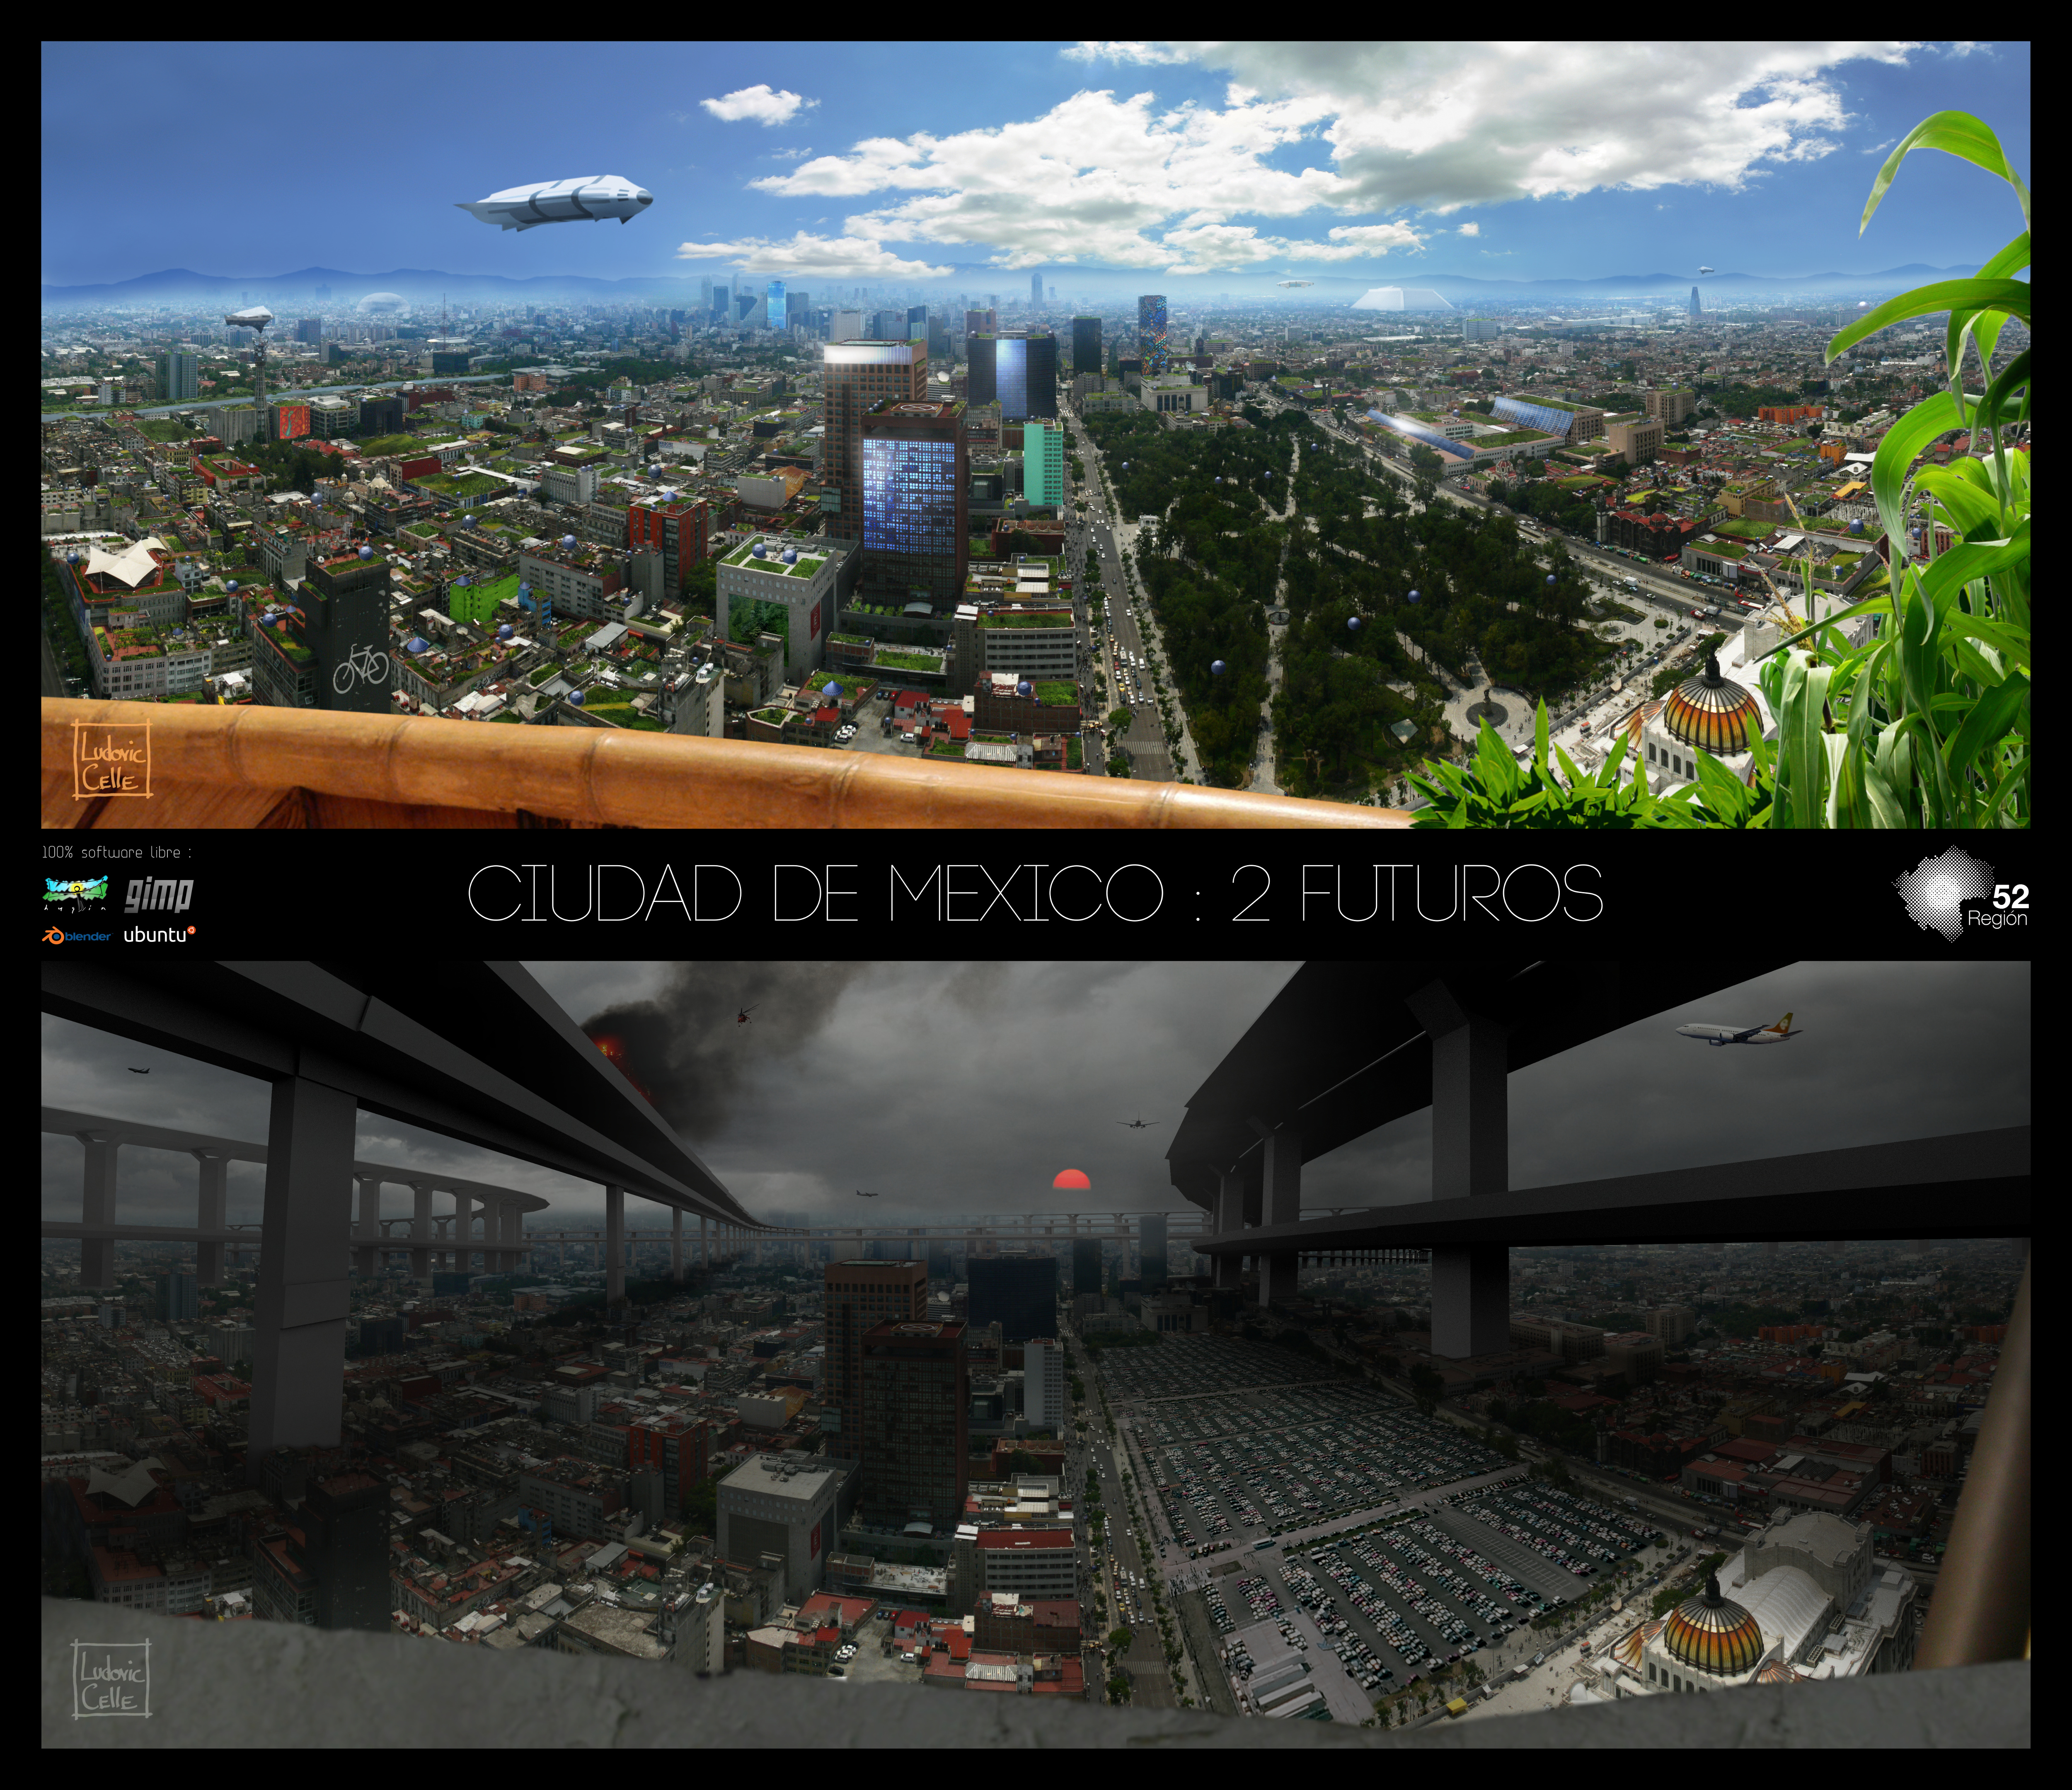 Ciudad de Mexico - 2 futuros